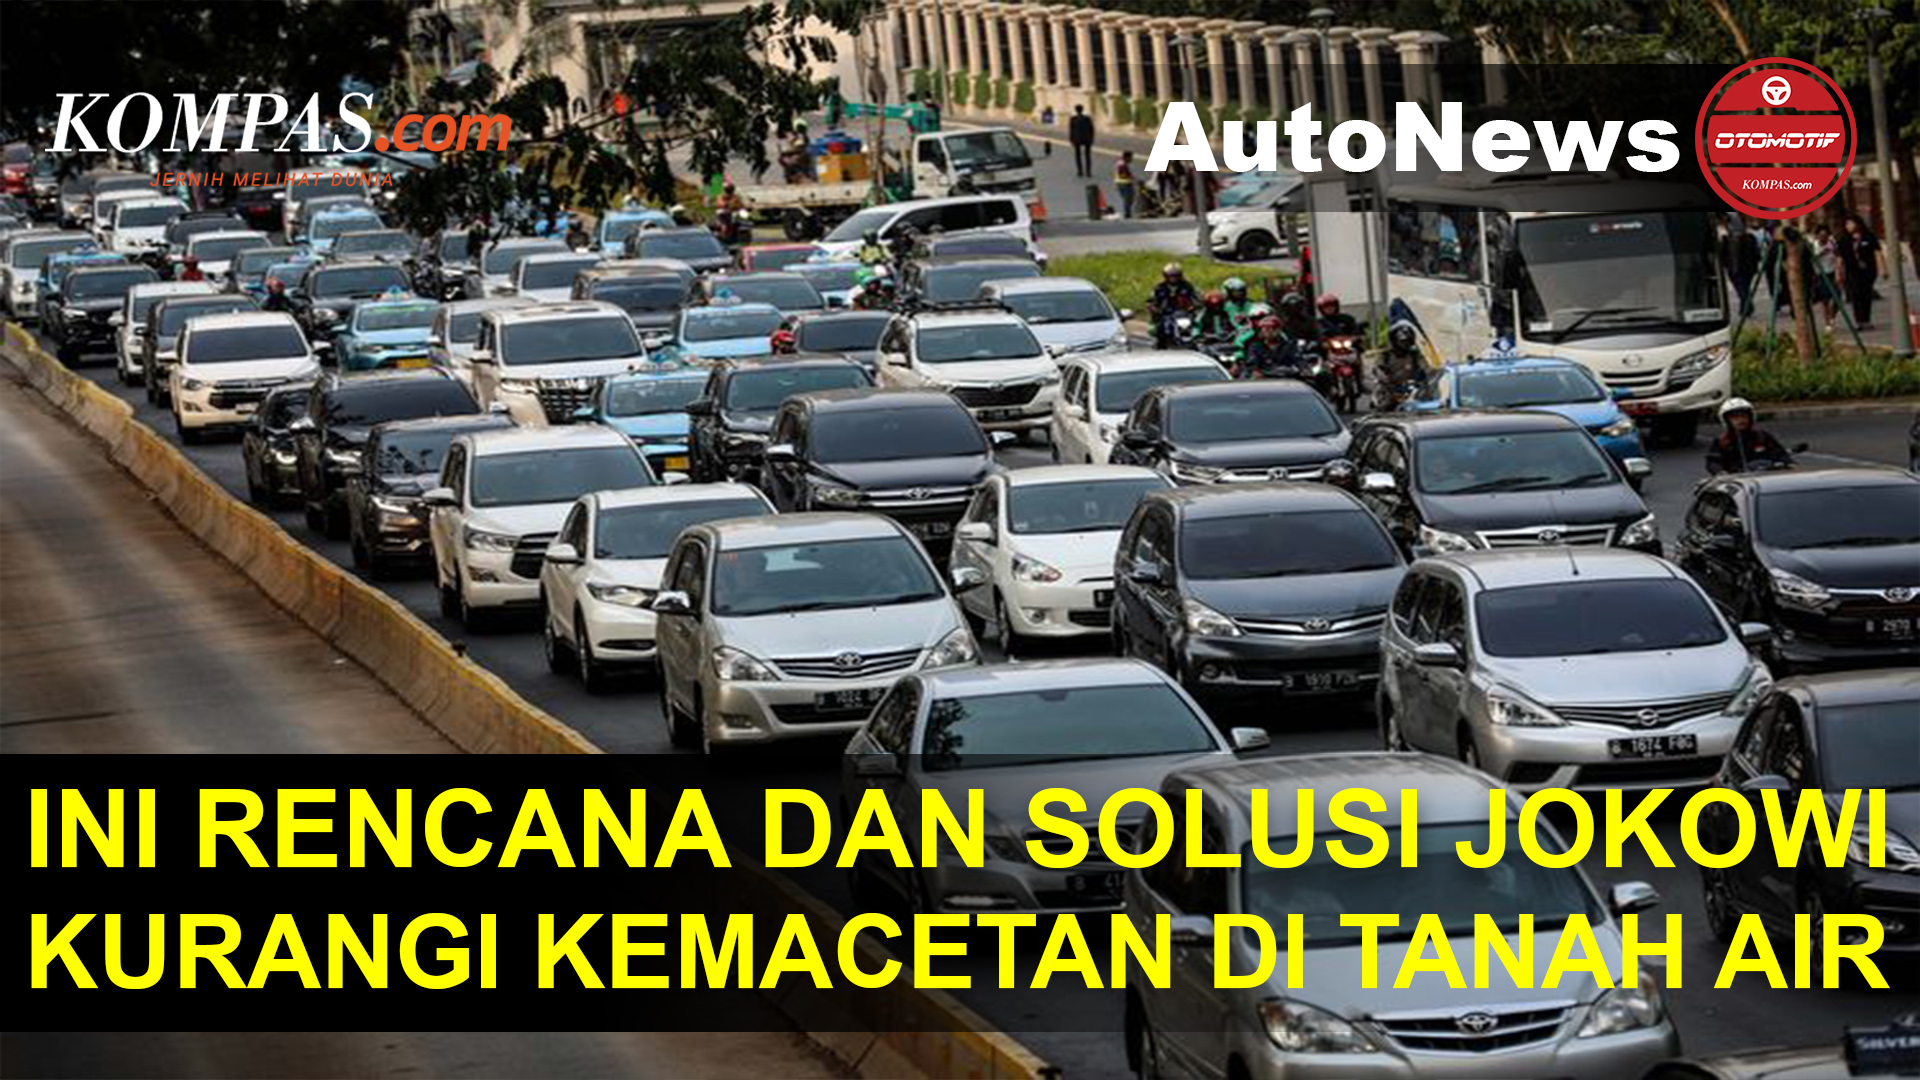 Solusi Jokowi untuk Kurangi Macet karena Lonjakan Penjualan Mobil